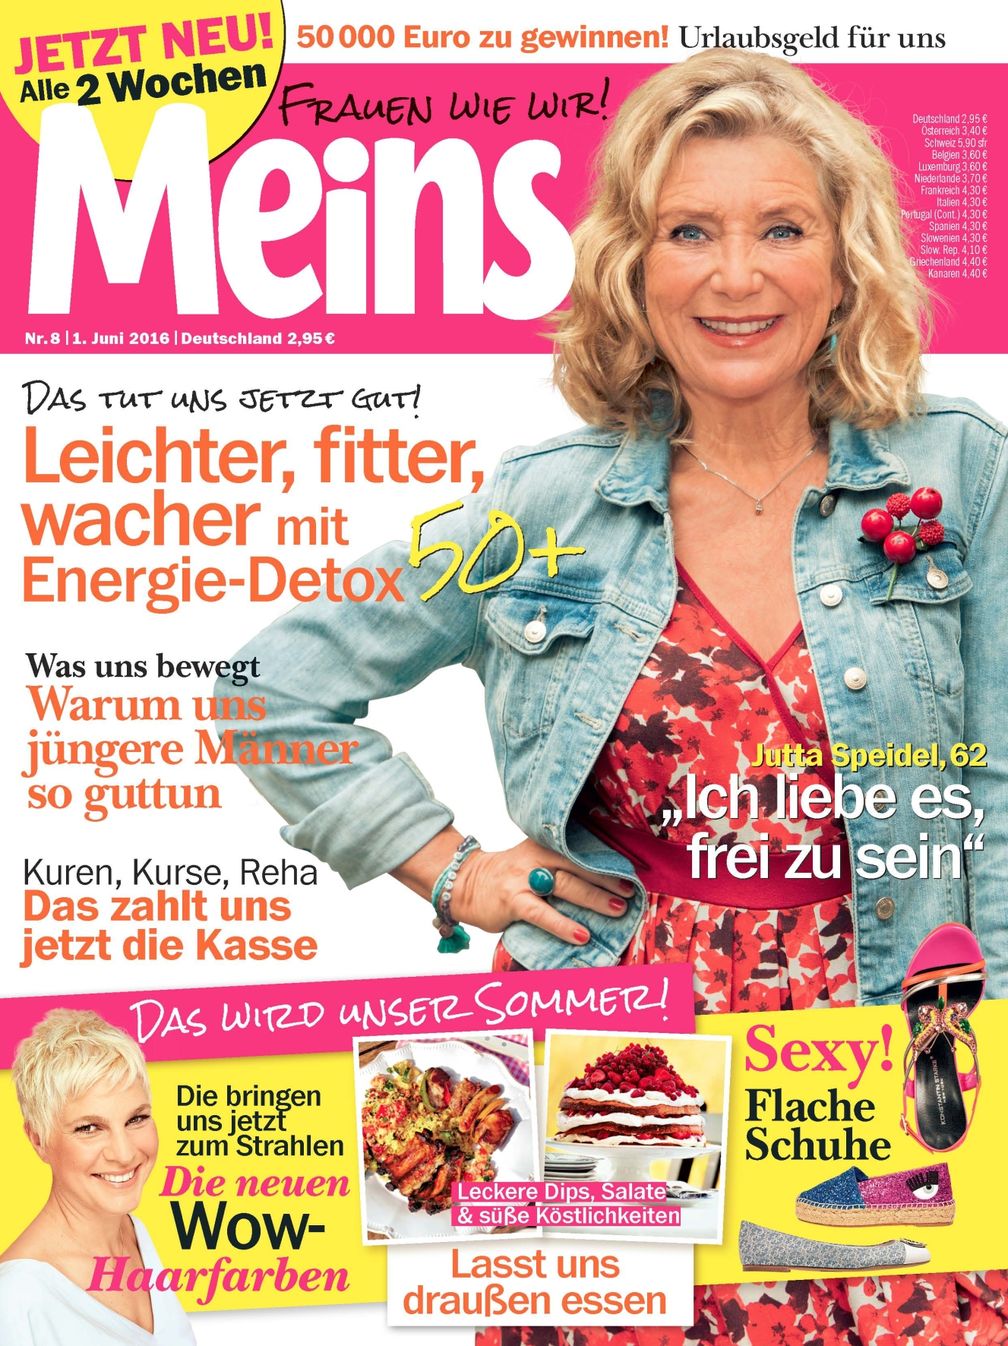 Bild: "obs/Bauer Media Group, Meins/Meins"